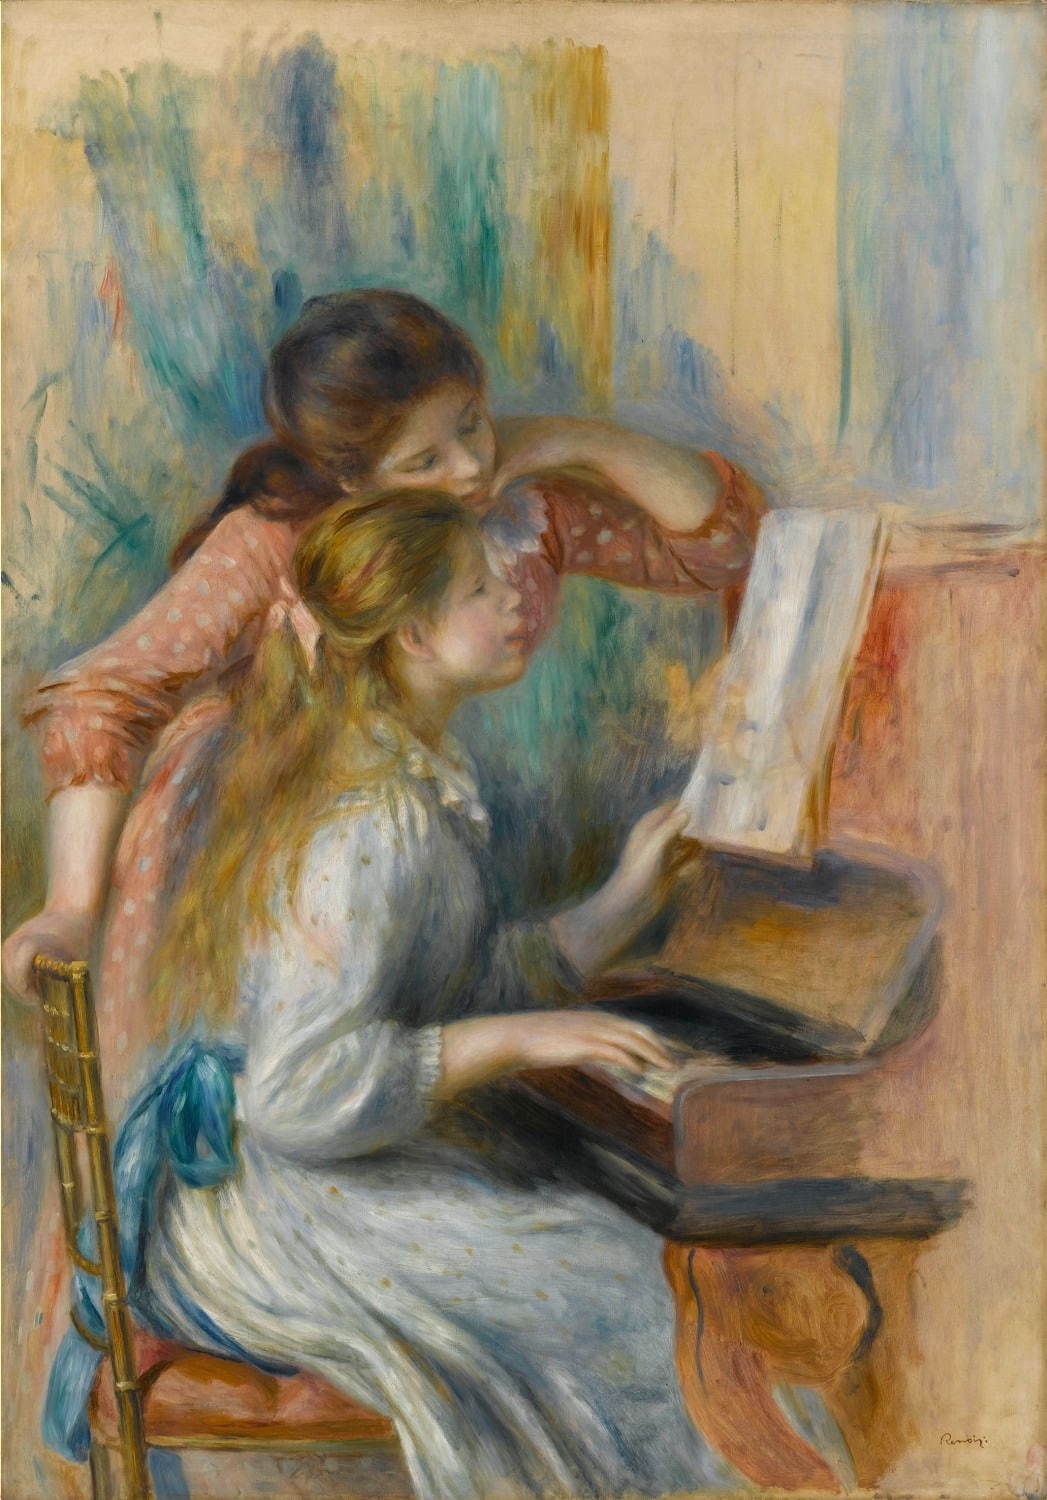 オーギュスト・ルノワール《ピアノを弾く少女たち》1892年頃、油彩・カンヴァス、116×81cm
Photo © RMN-Grand Palais (musée de l